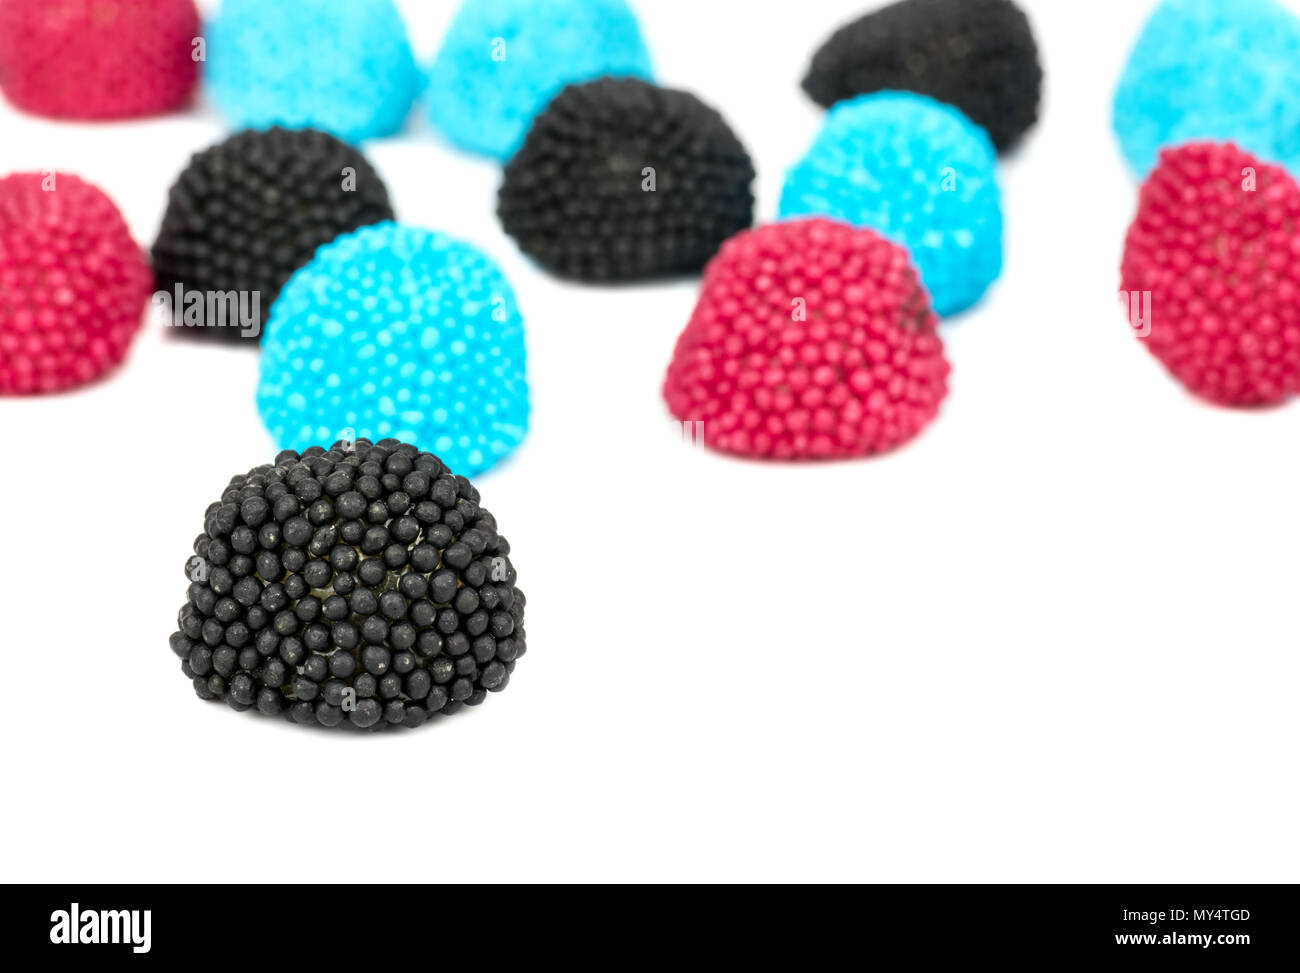 Vereinzelte farbige Berry jelly Bonbons auf weißem Hintergrund Stockfoto